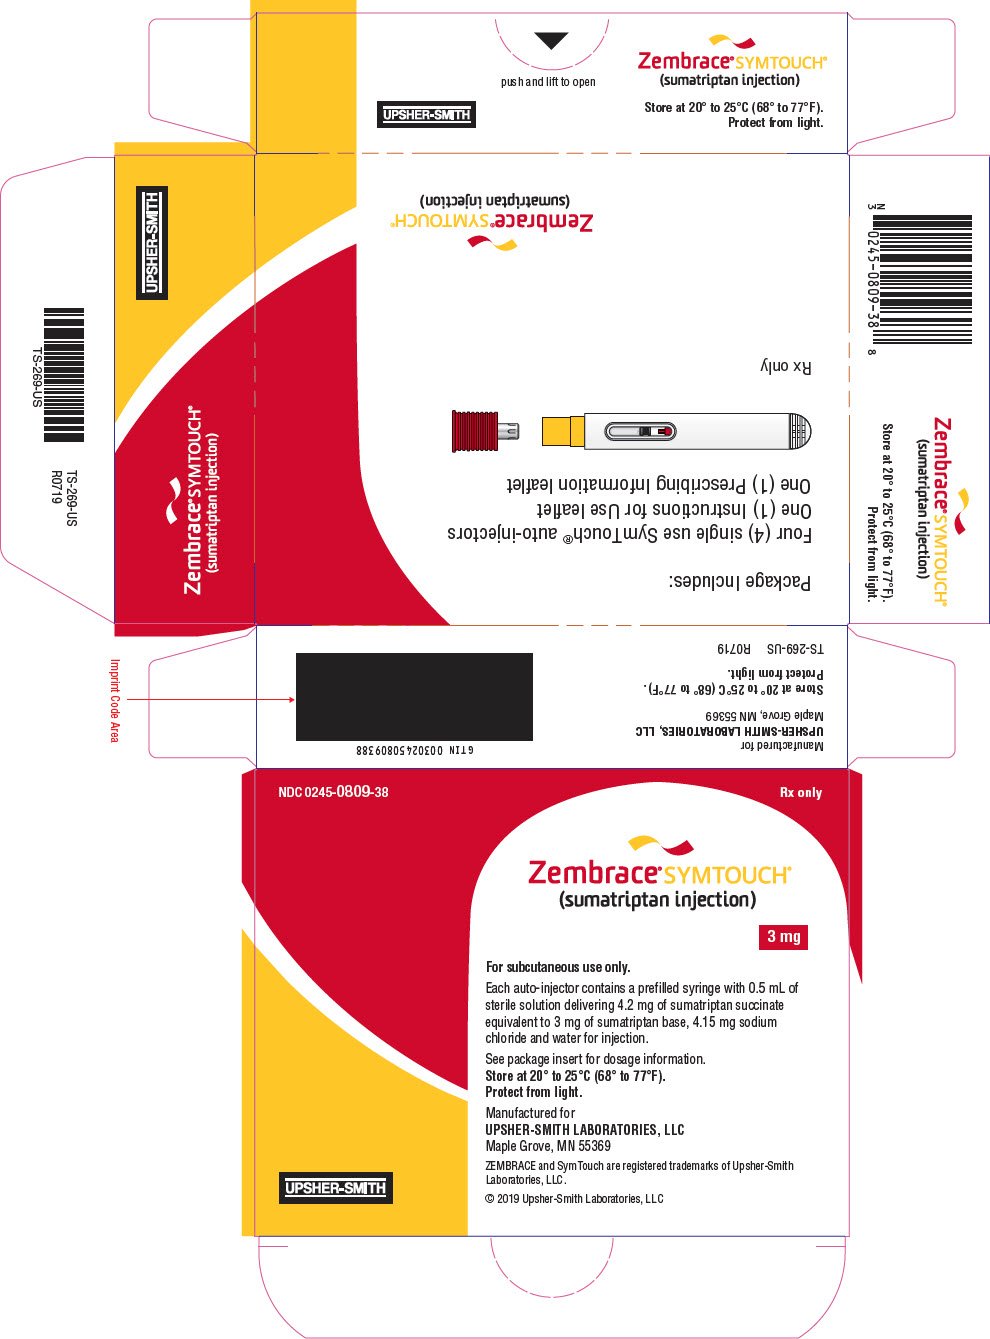 PRINCIPAL DISPLAY PANEL - 3 mg Syringe Carton